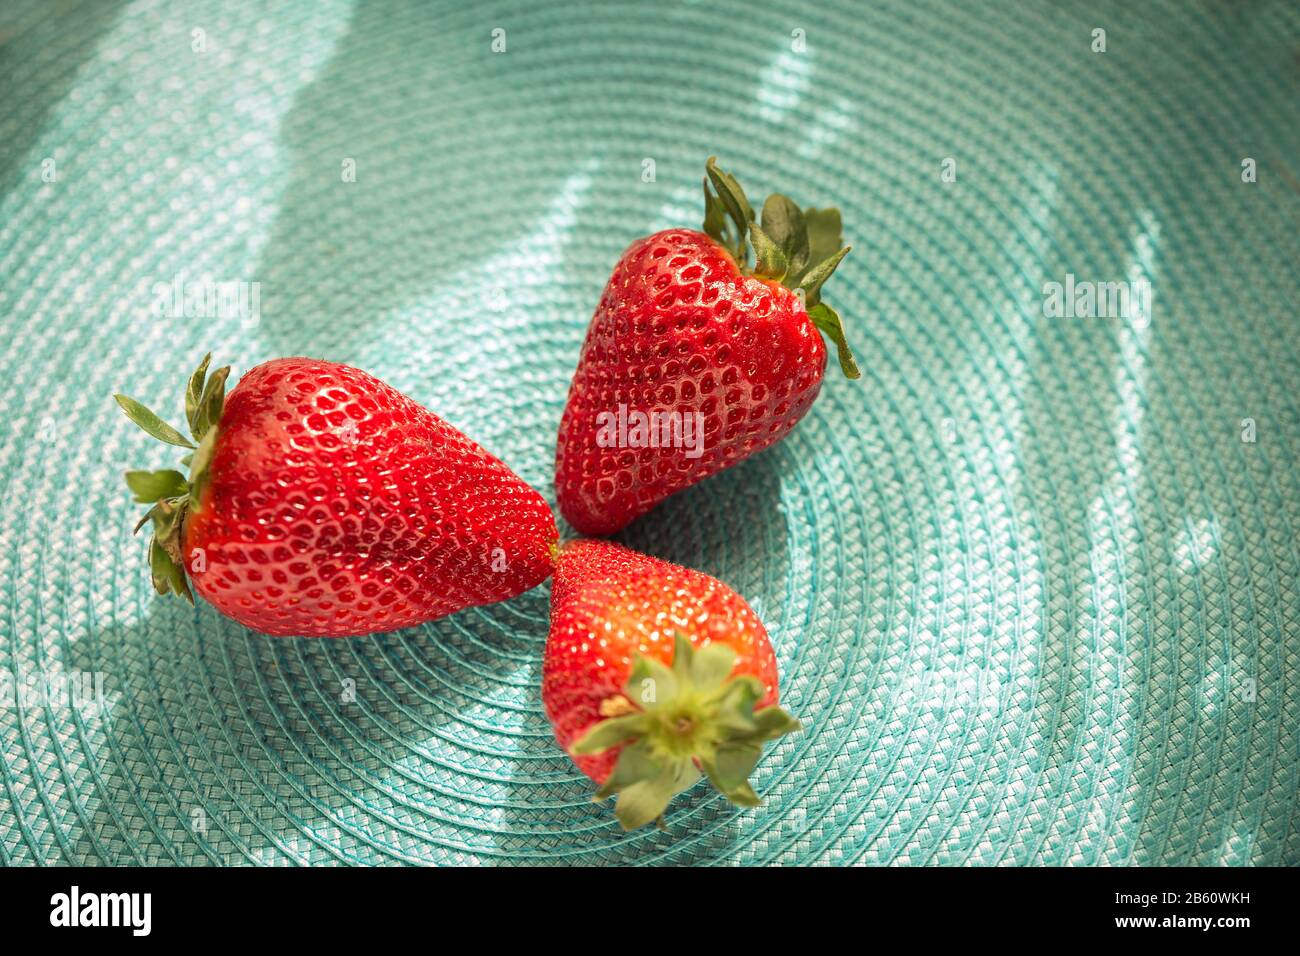 gros plan de fraises rouges rafraîchissantes sur une surface plane bleue Banque D'Images